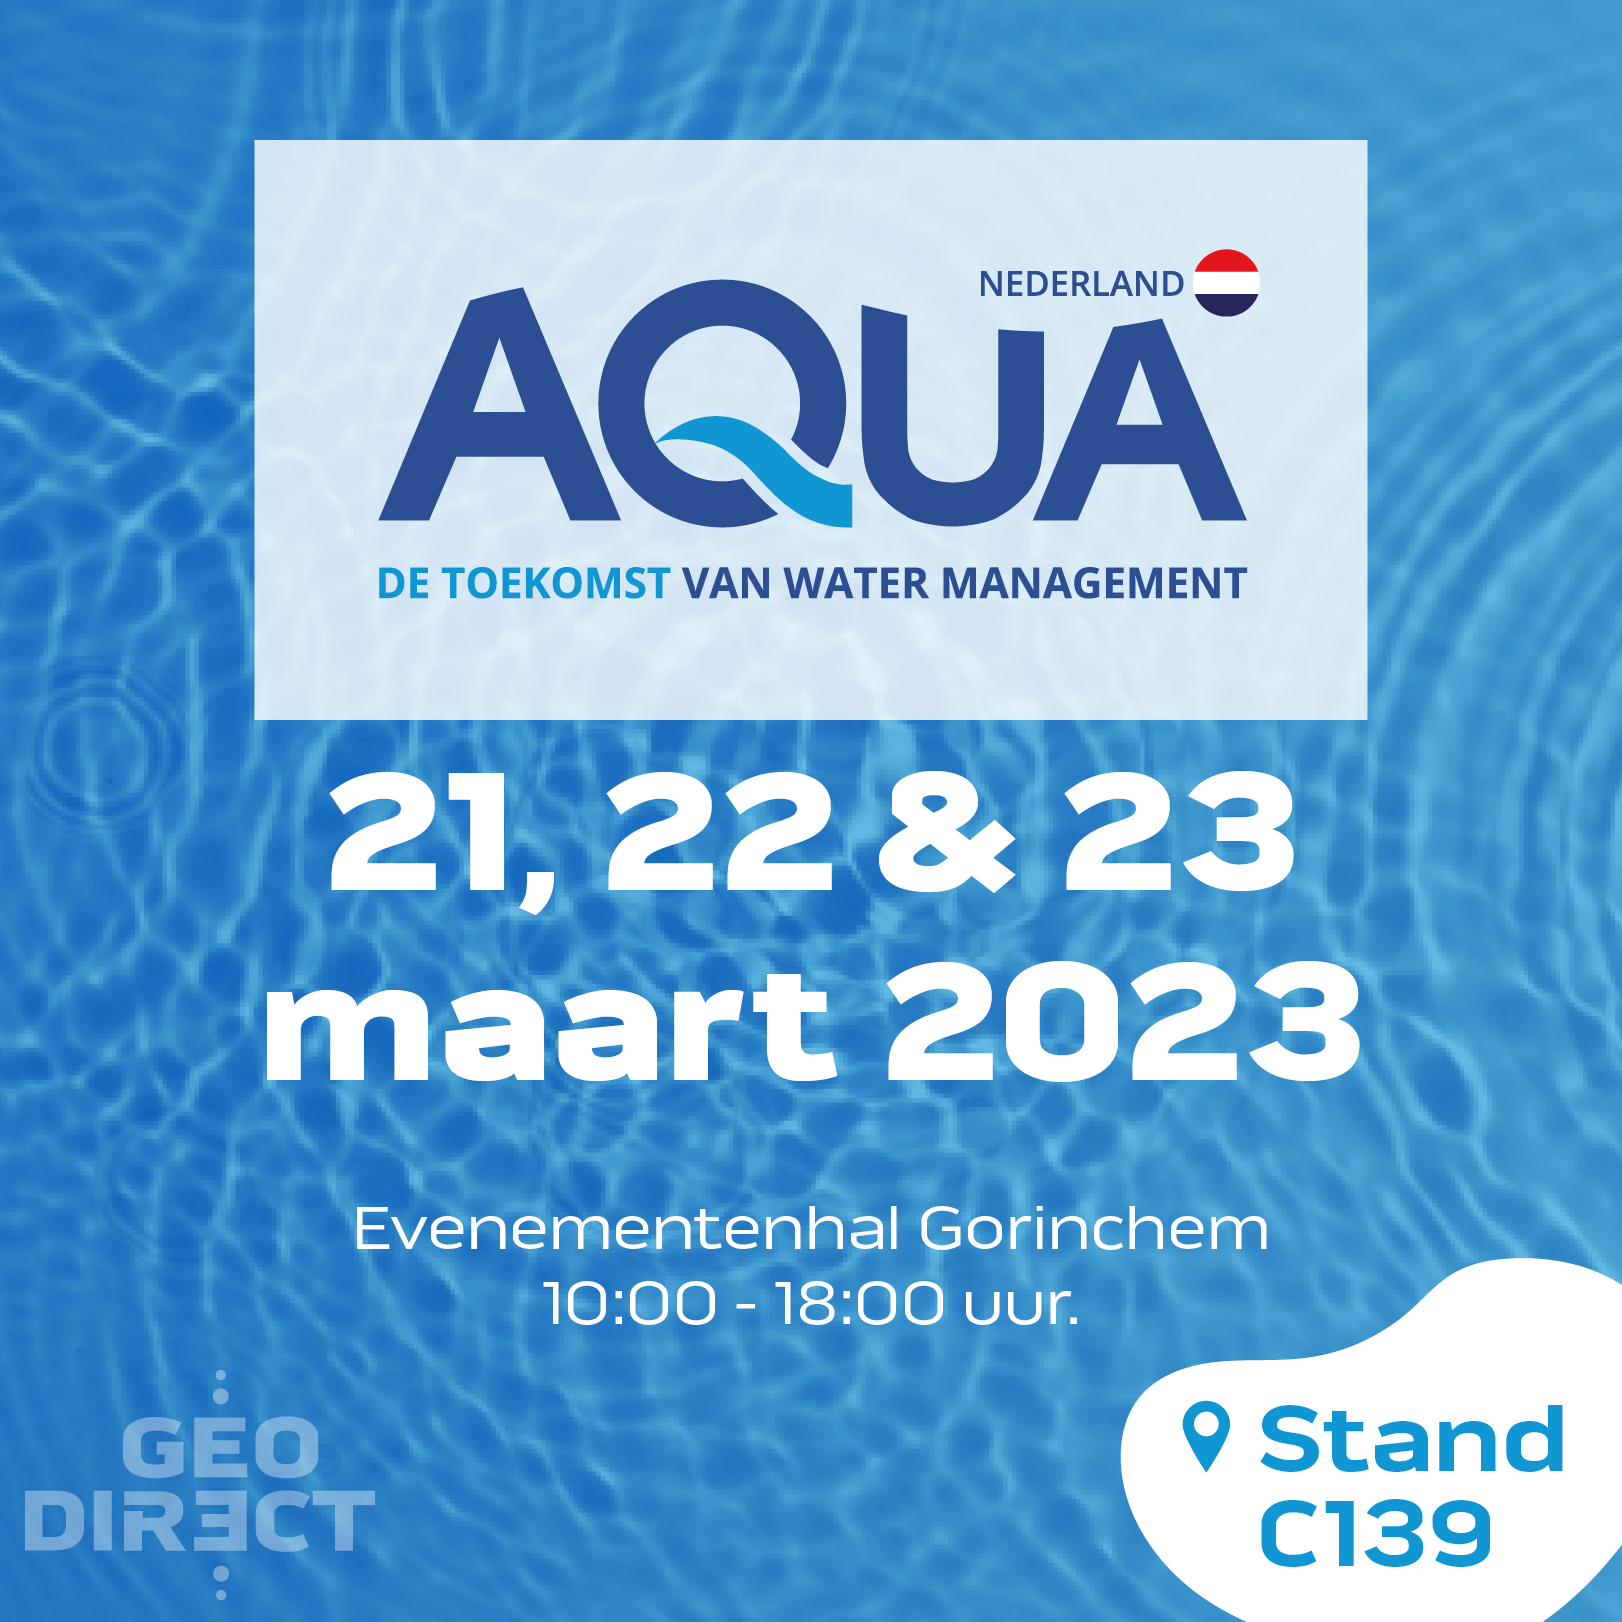 AQUA Nederland Fair Trade 2023